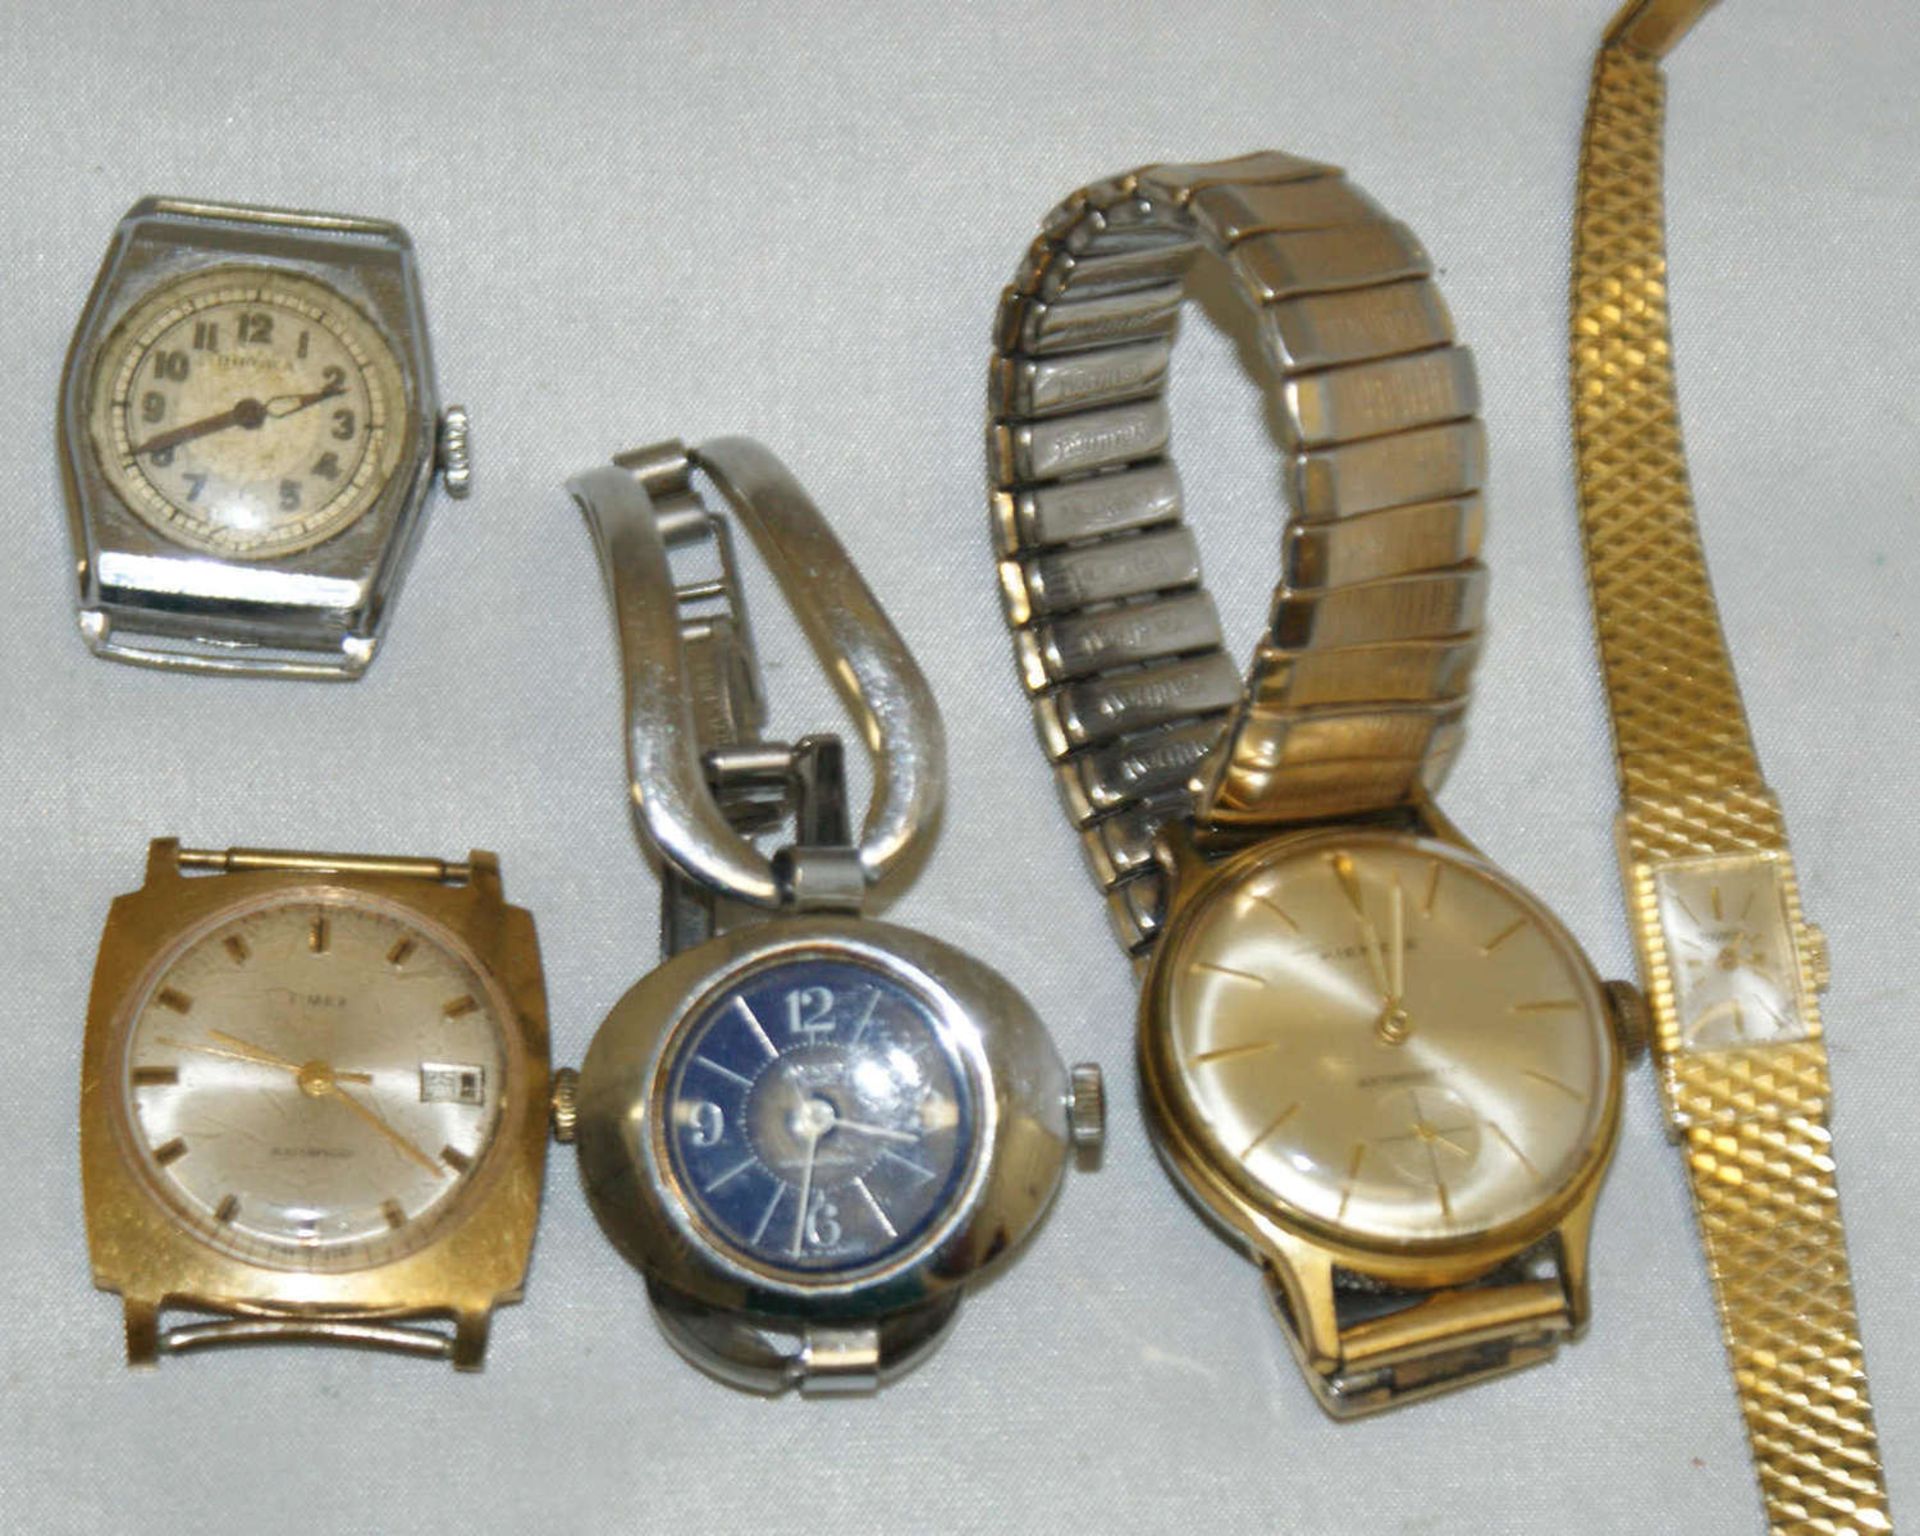 Lot von 5 mechanischen Damen- und Herrenarmbanduhren, dabei z.B. Kienzle, Timex, etc.